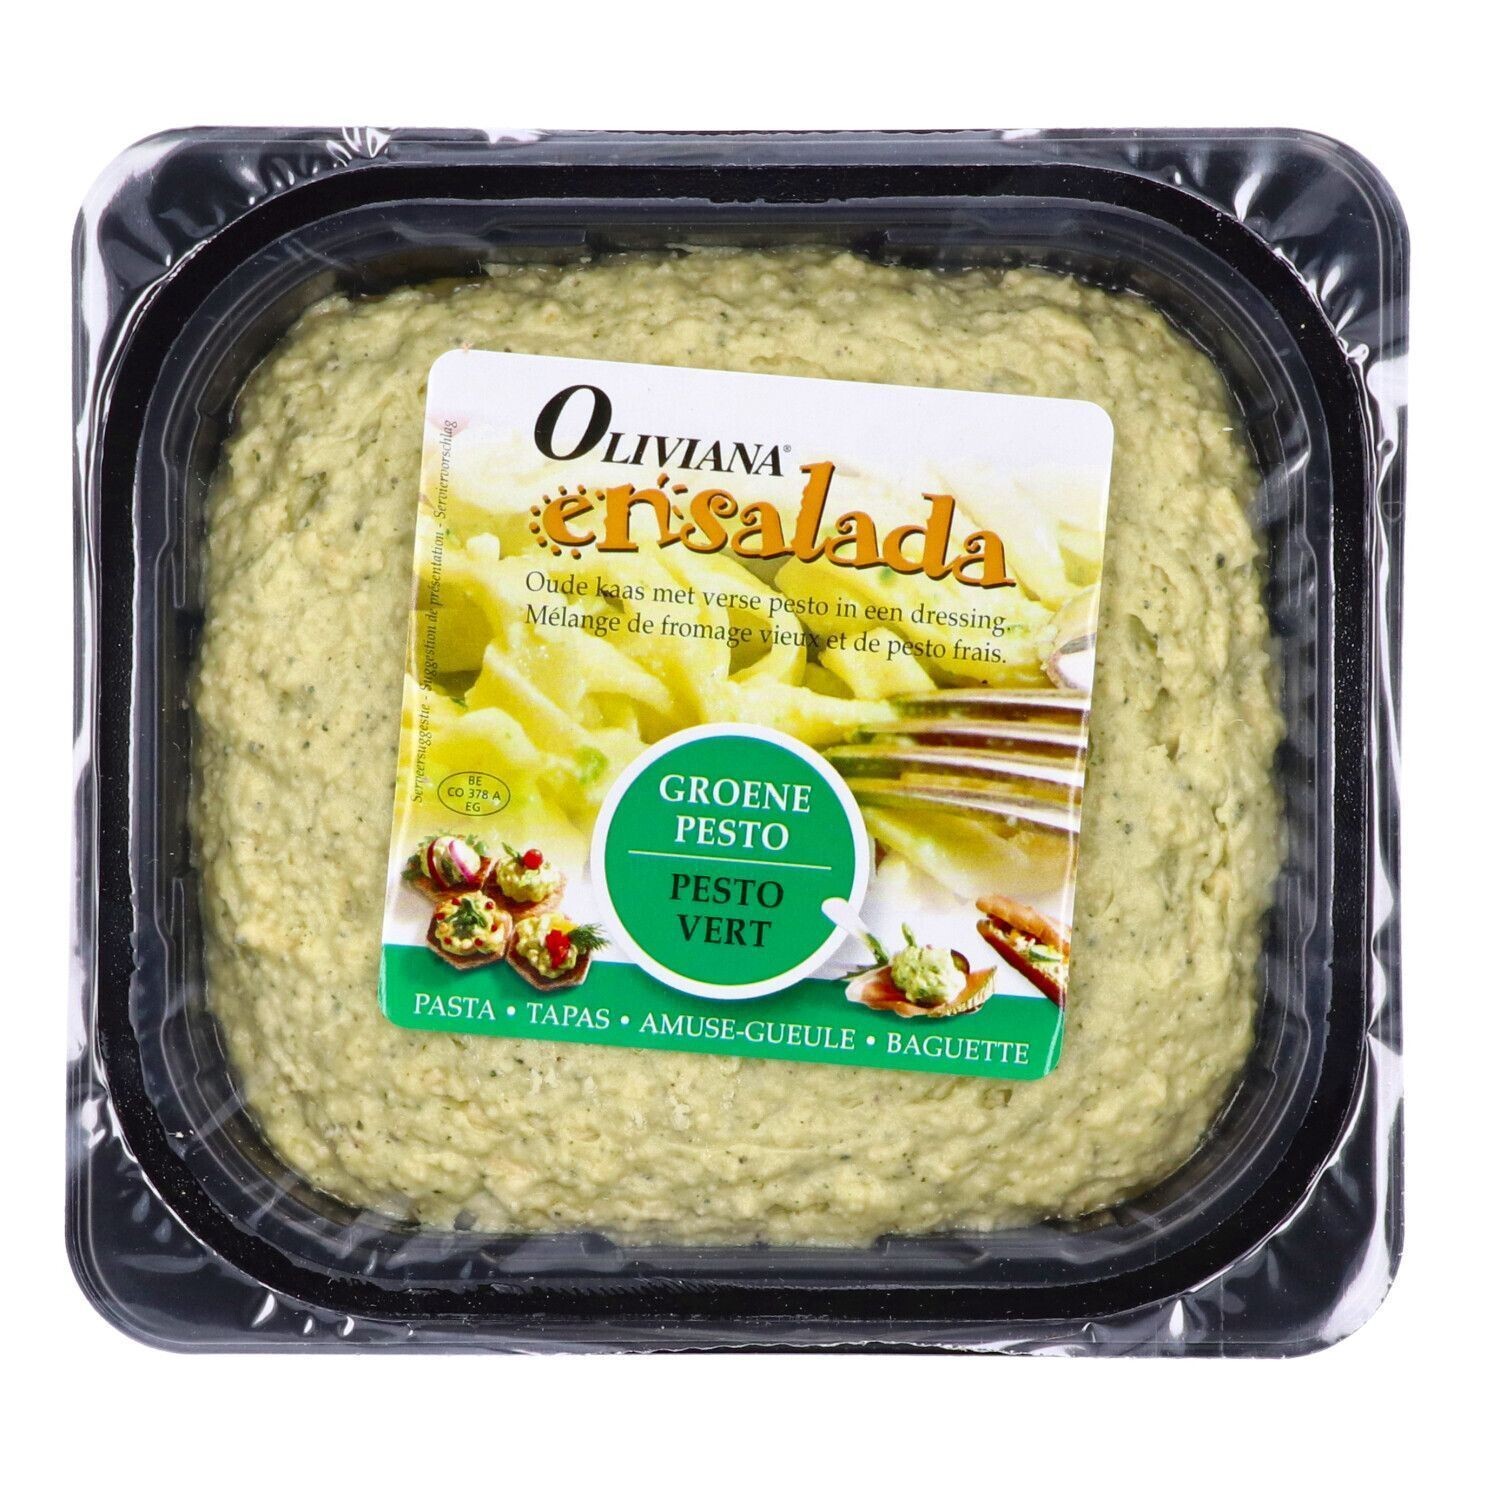 Oliviana Ensalada Green Pesto 1.1kg